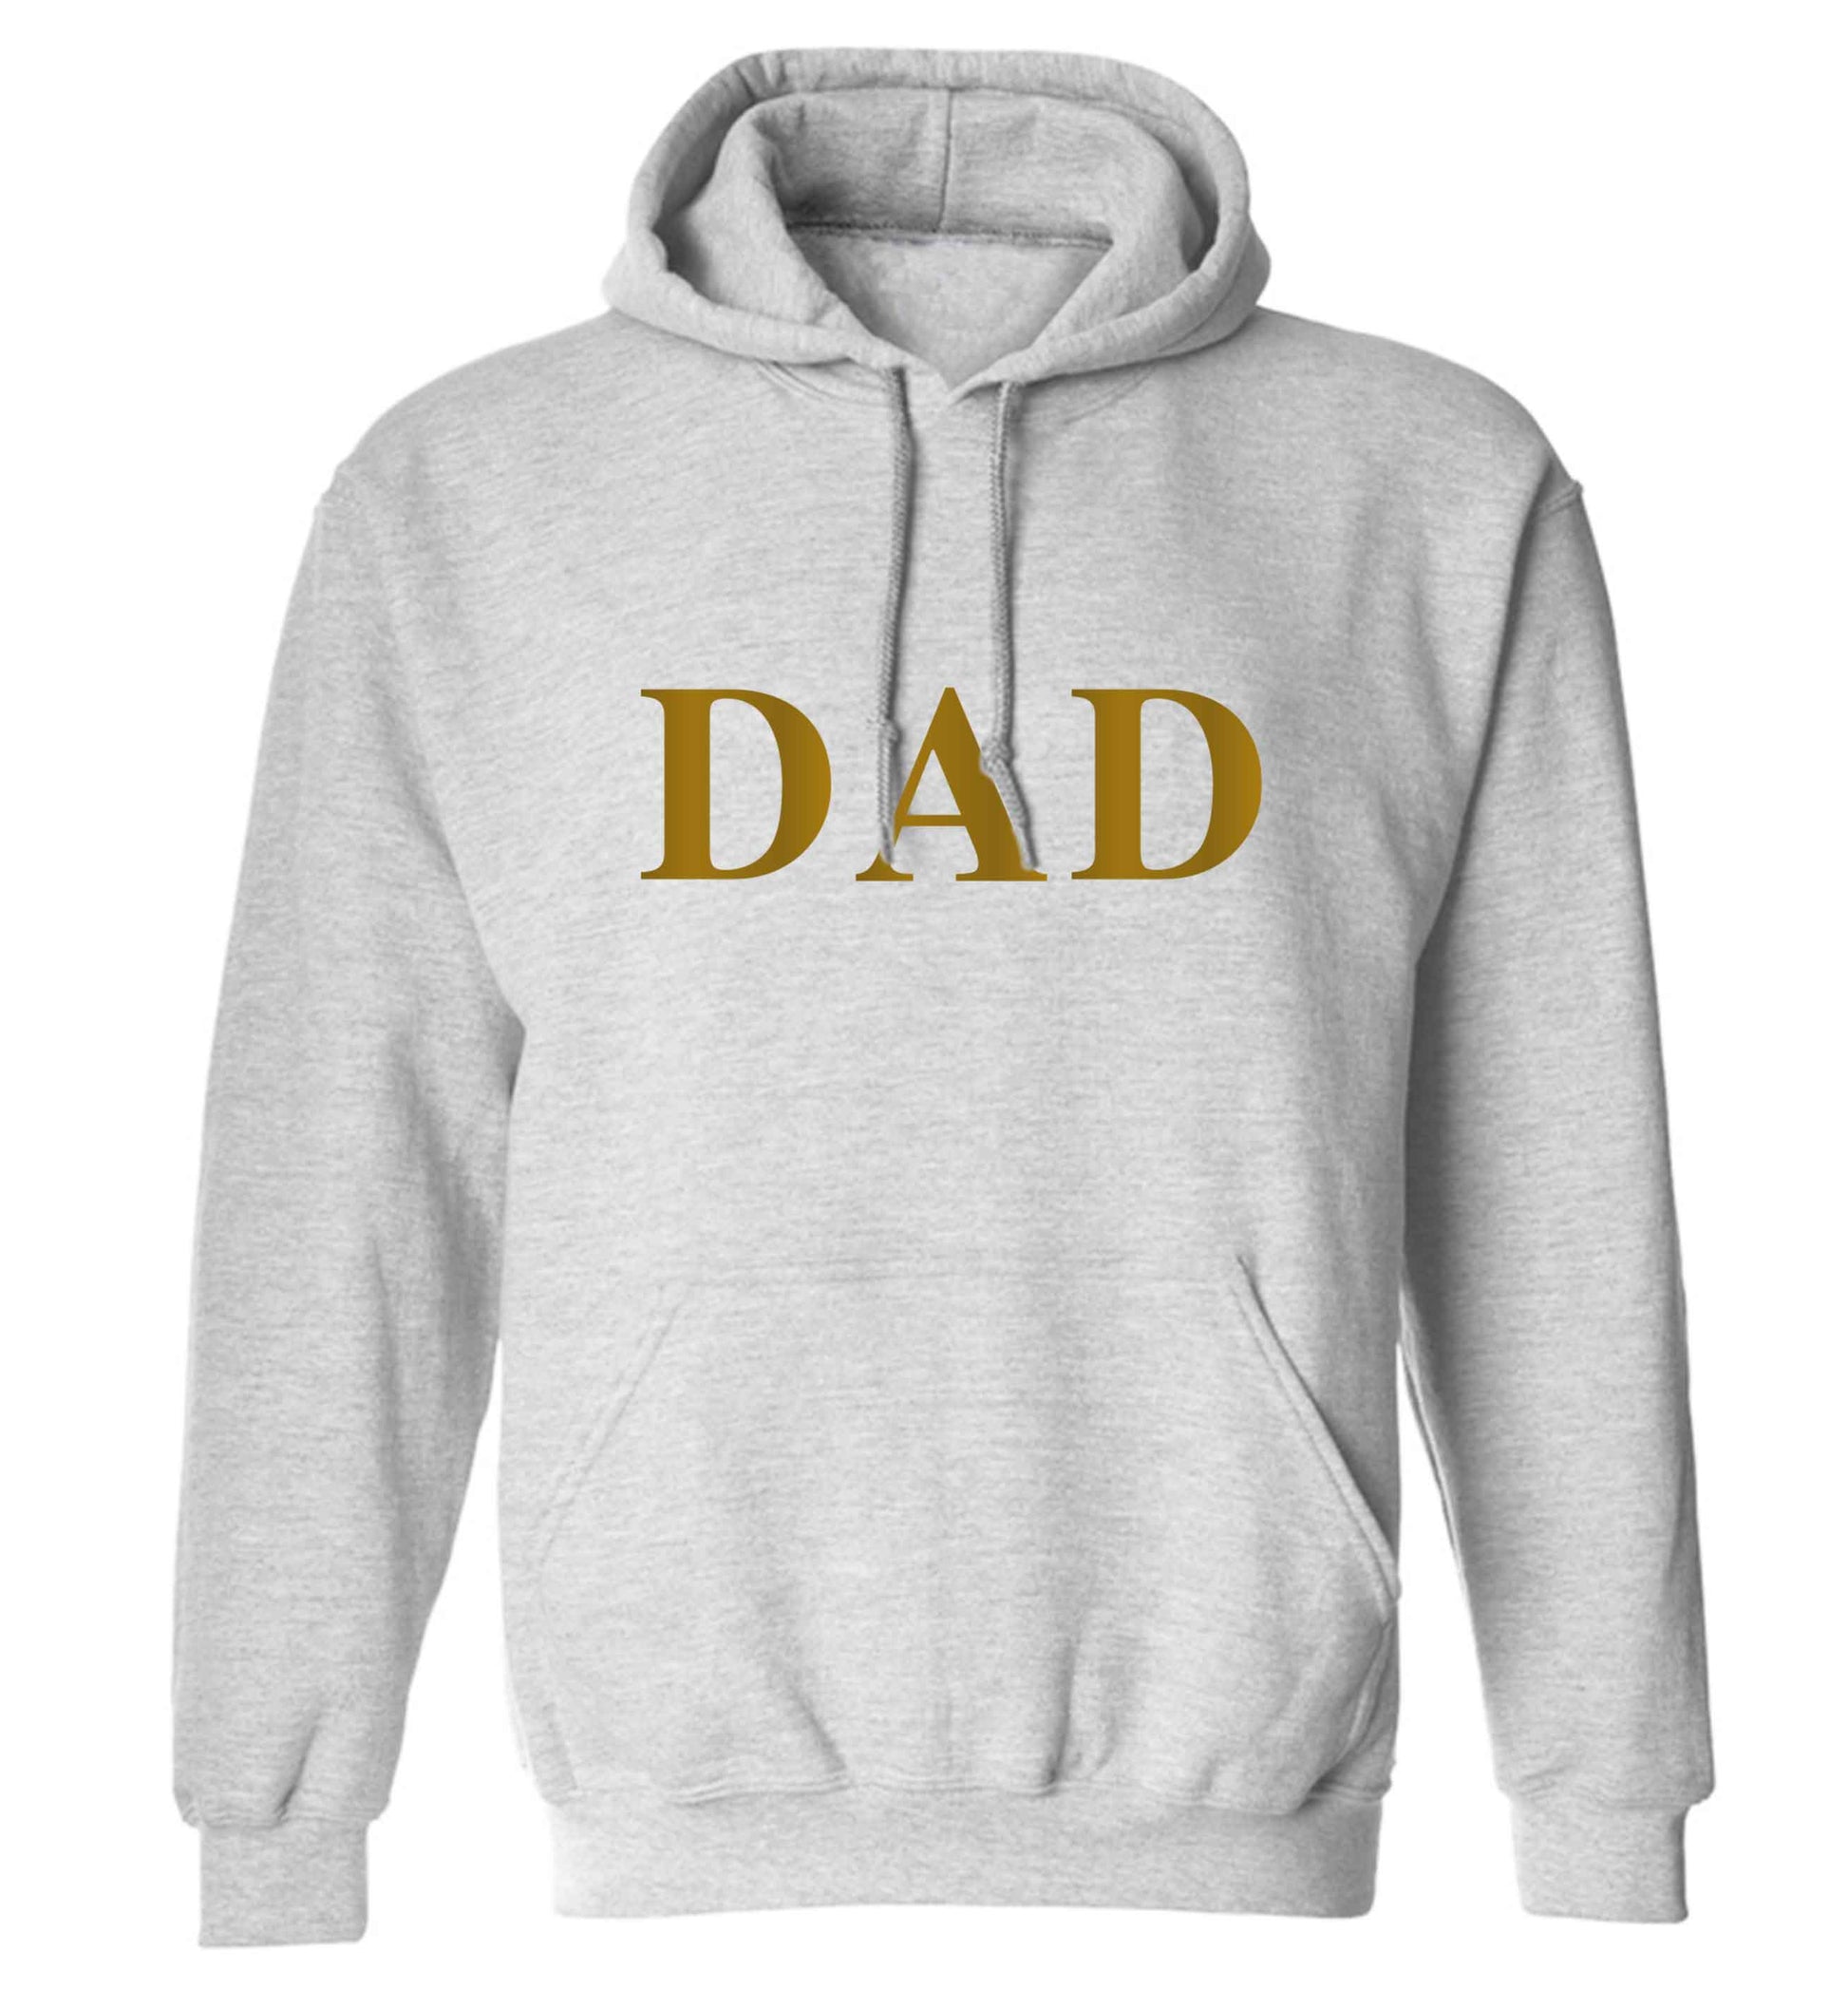 Dad adults unisex grey hoodie 2XL